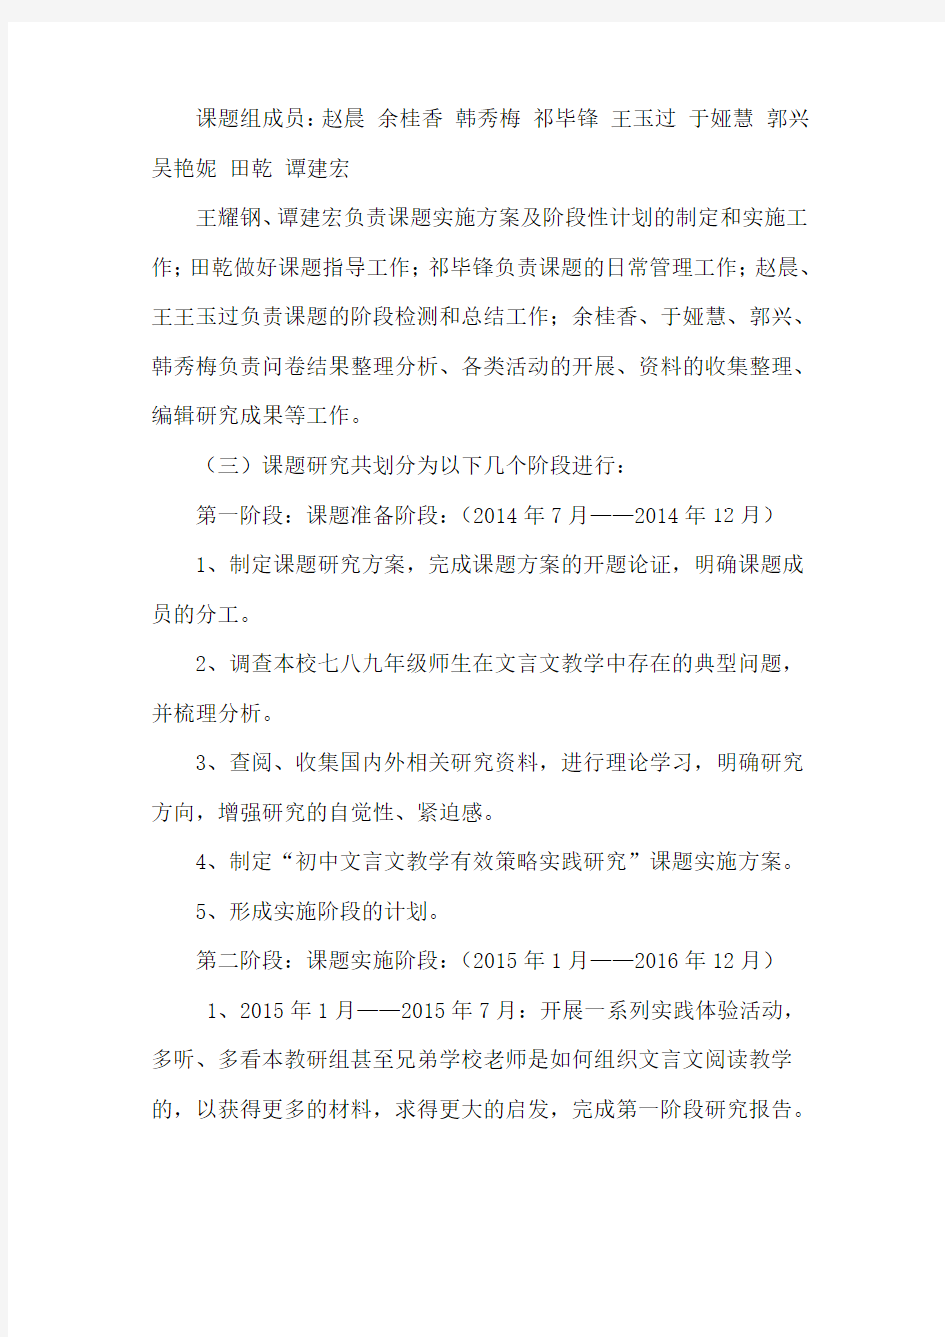 《初中文言文有效教学策略实践研究》课题研究中期工作总结报告